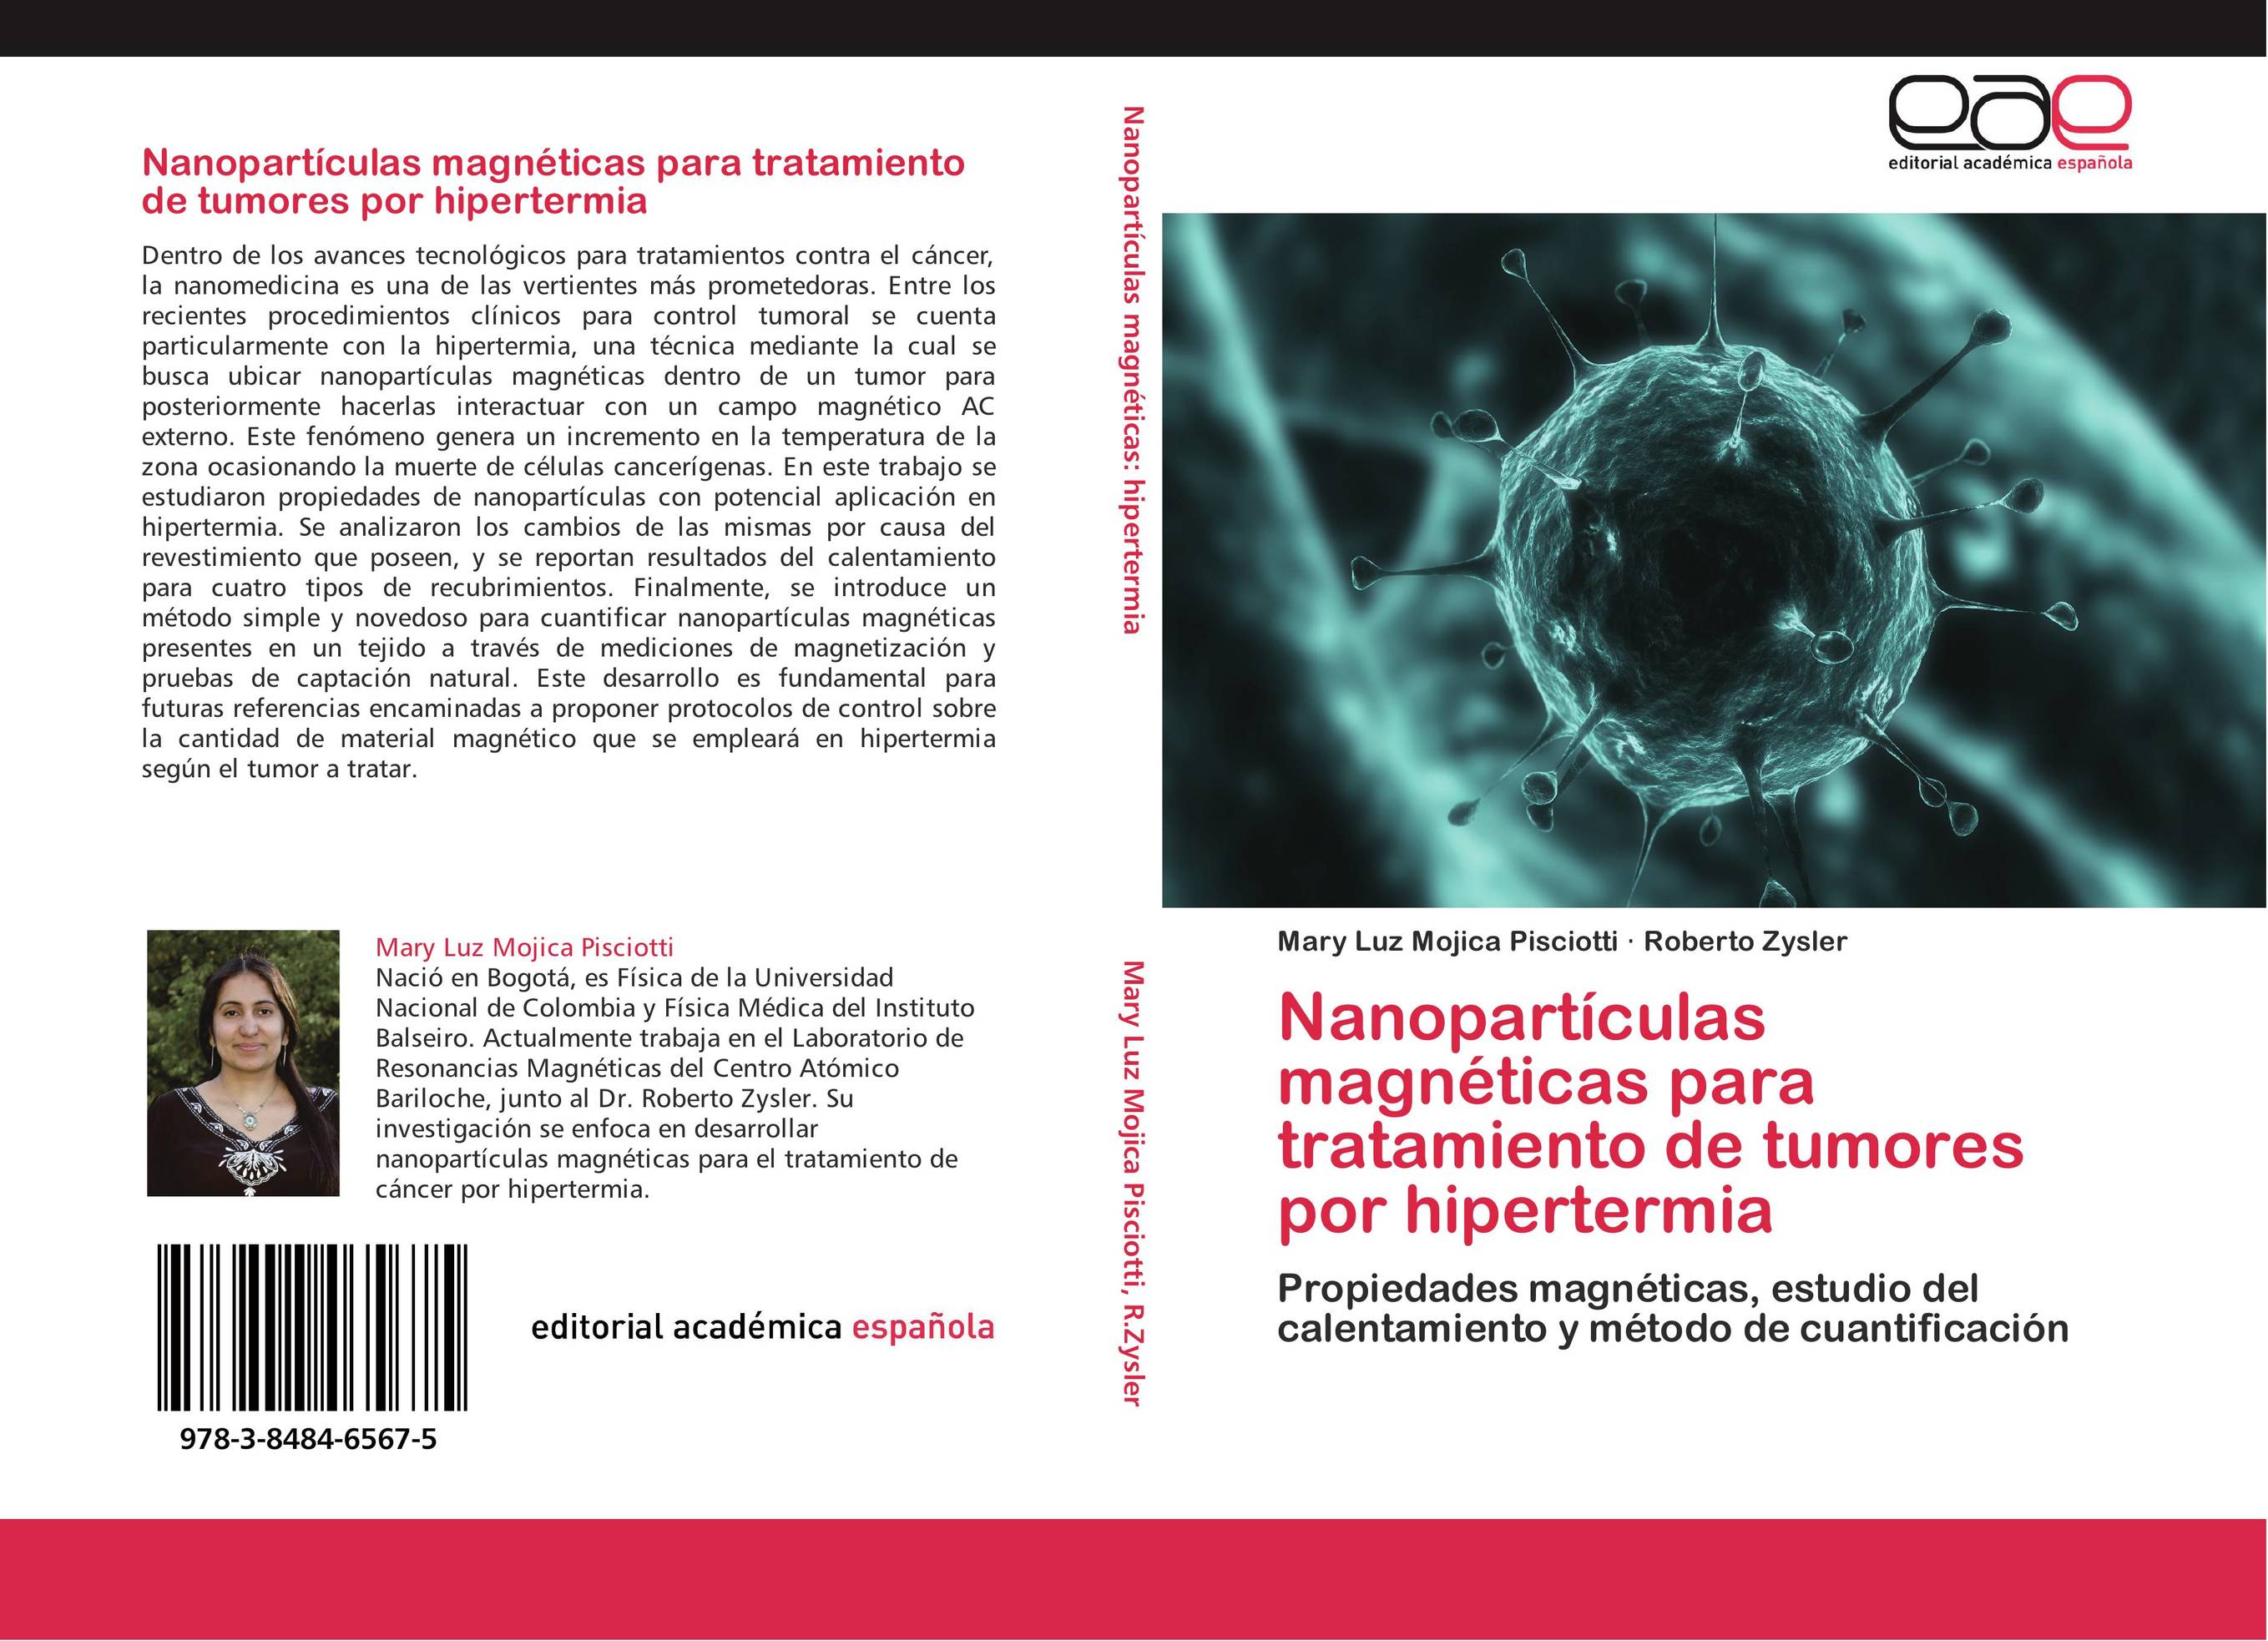 Nanopartículas magnéticas para tratamiento de tumores por hipertermia